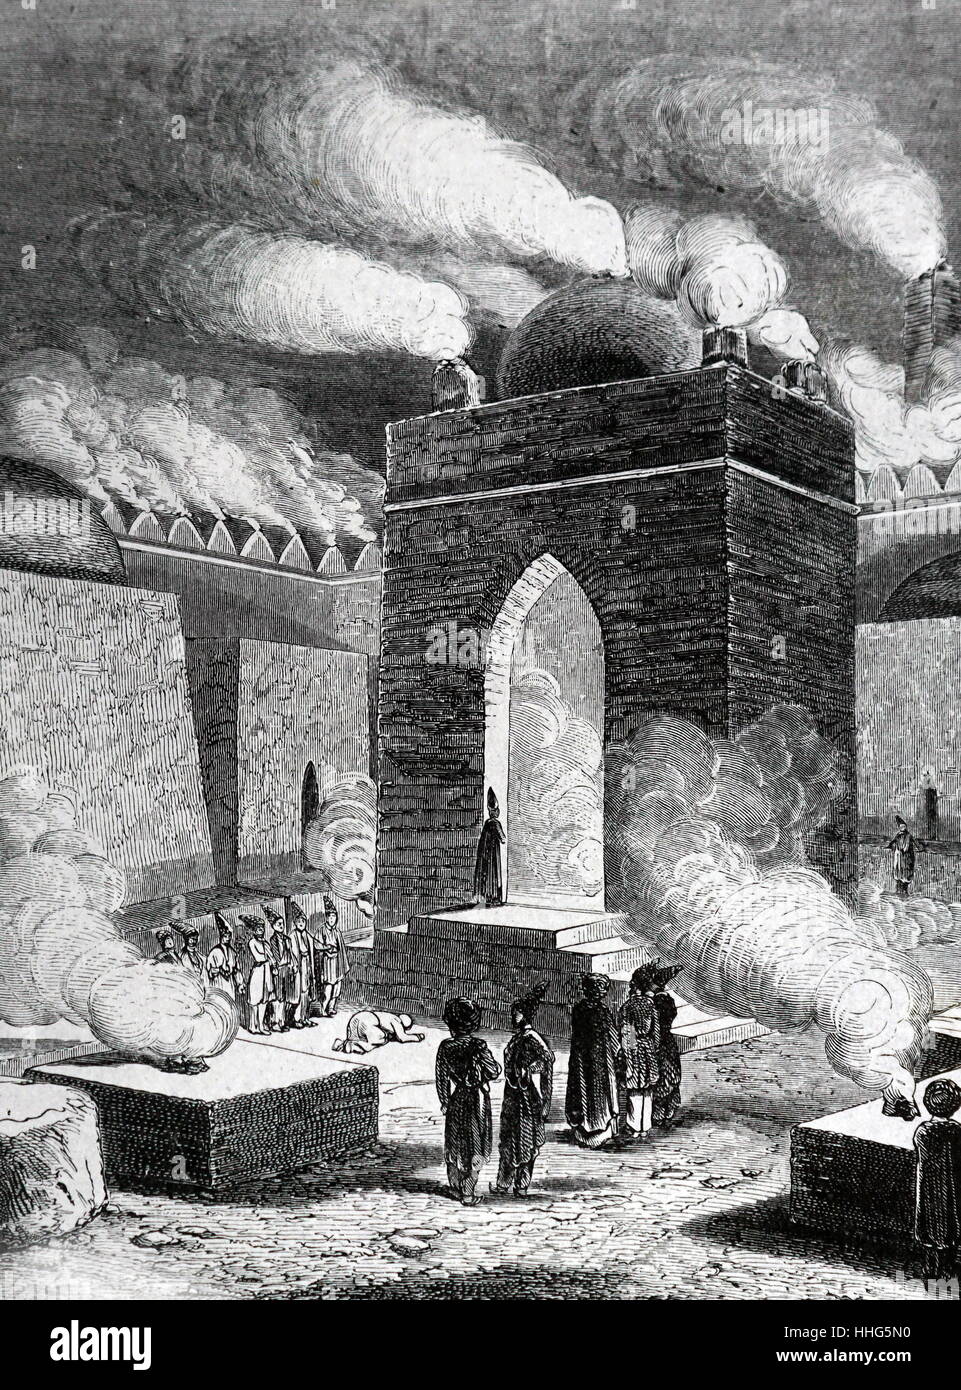 Die Baku-Baumeistern, bekannt als der Tempel des Feuers - Anfang des 19. Jahrhunderts Abbildung. Hindu und Zoroastrian Ort der Anbetung. Stockfoto